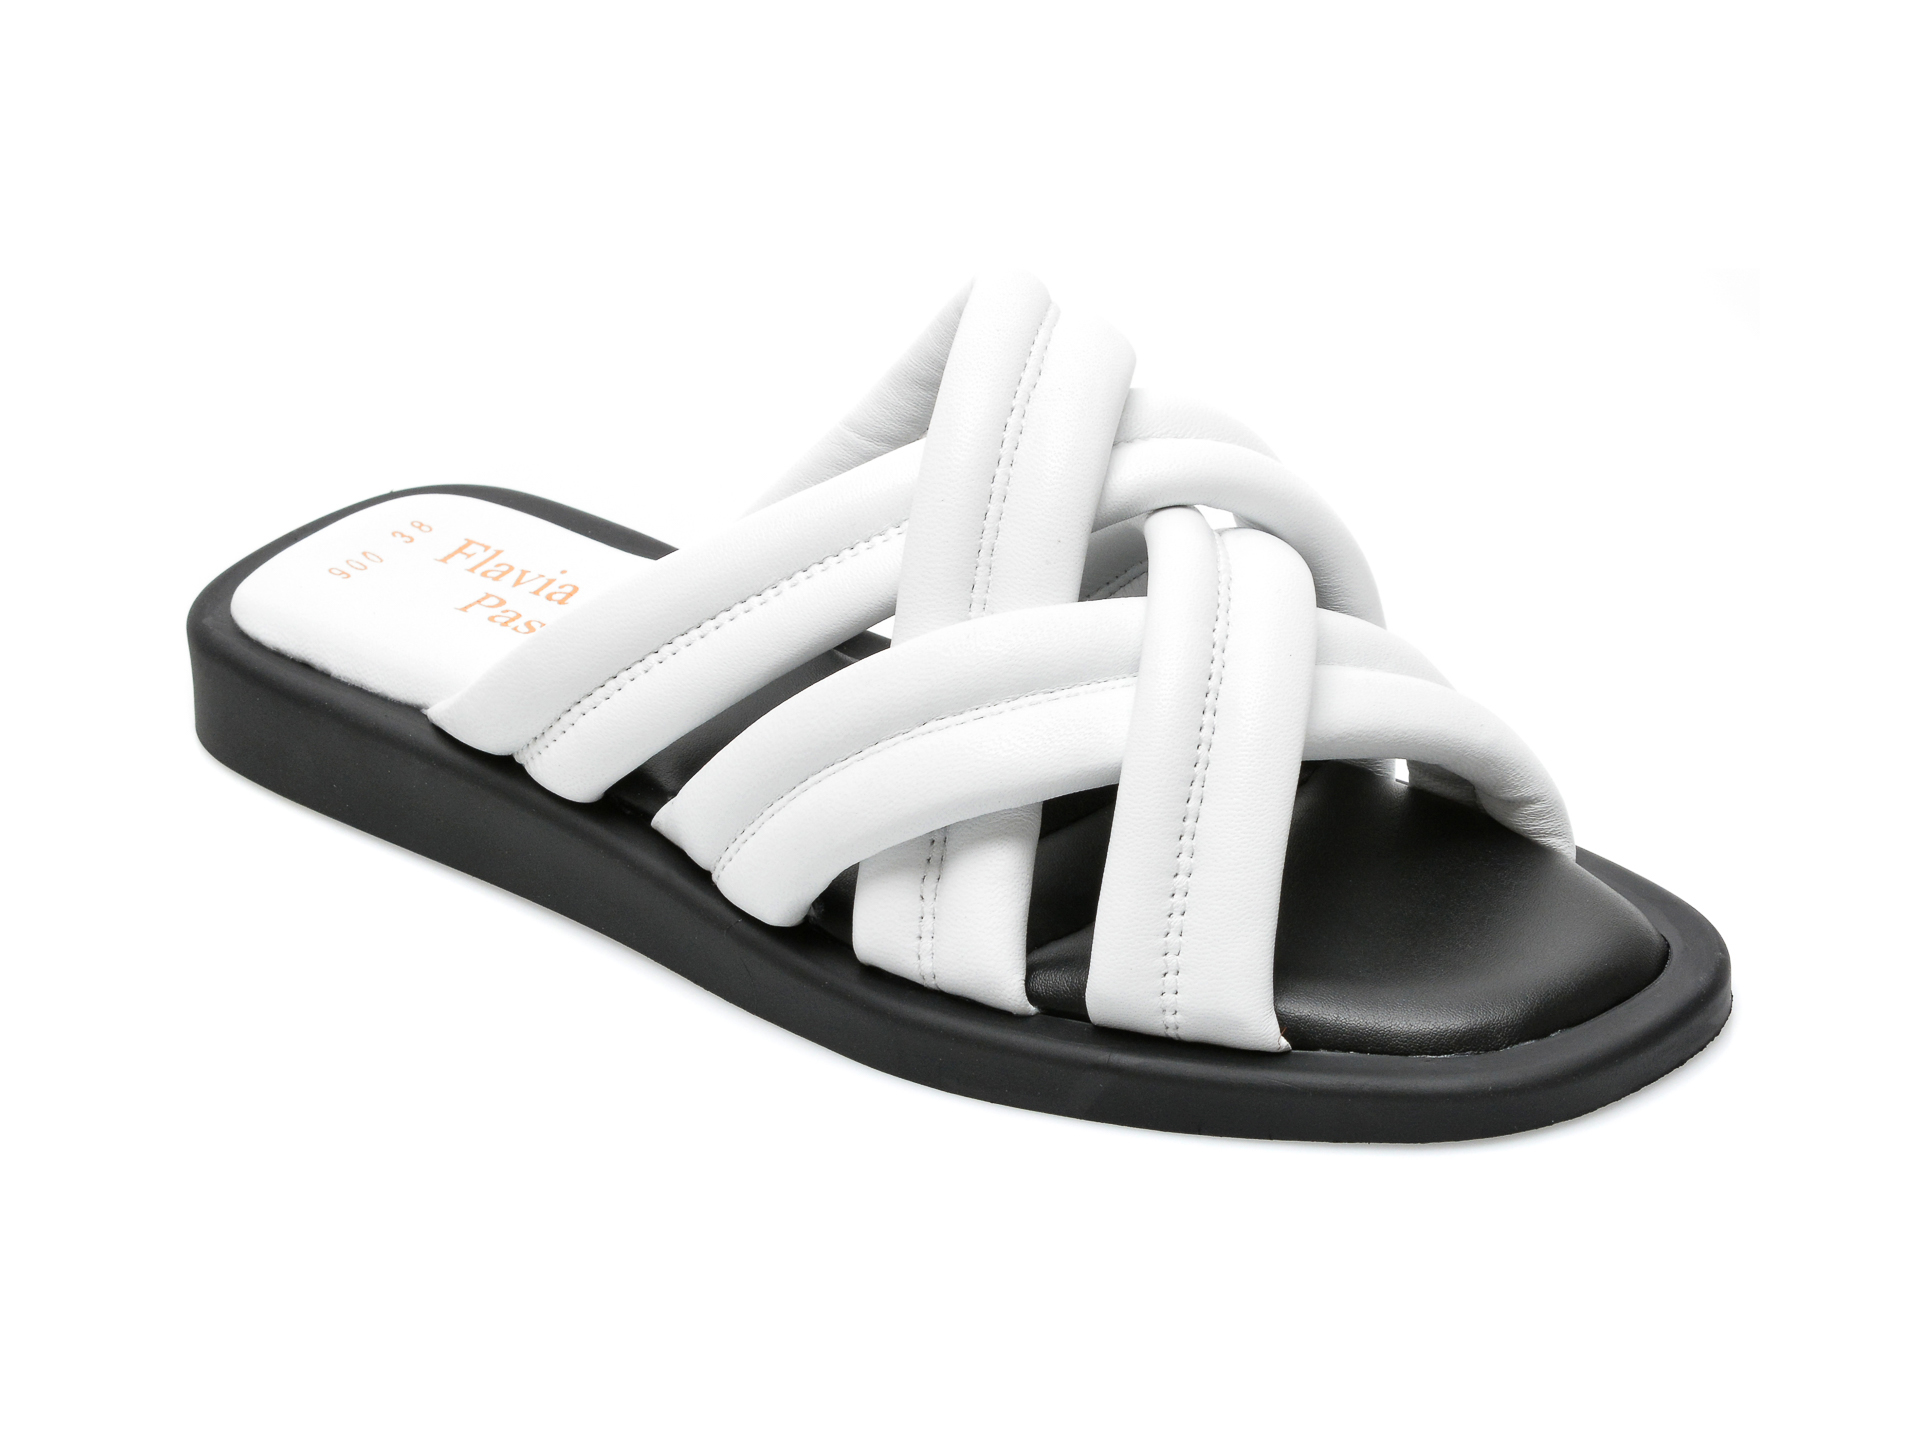 Papuci FLAVIA PASSINI albi, 226900, din piele naturala